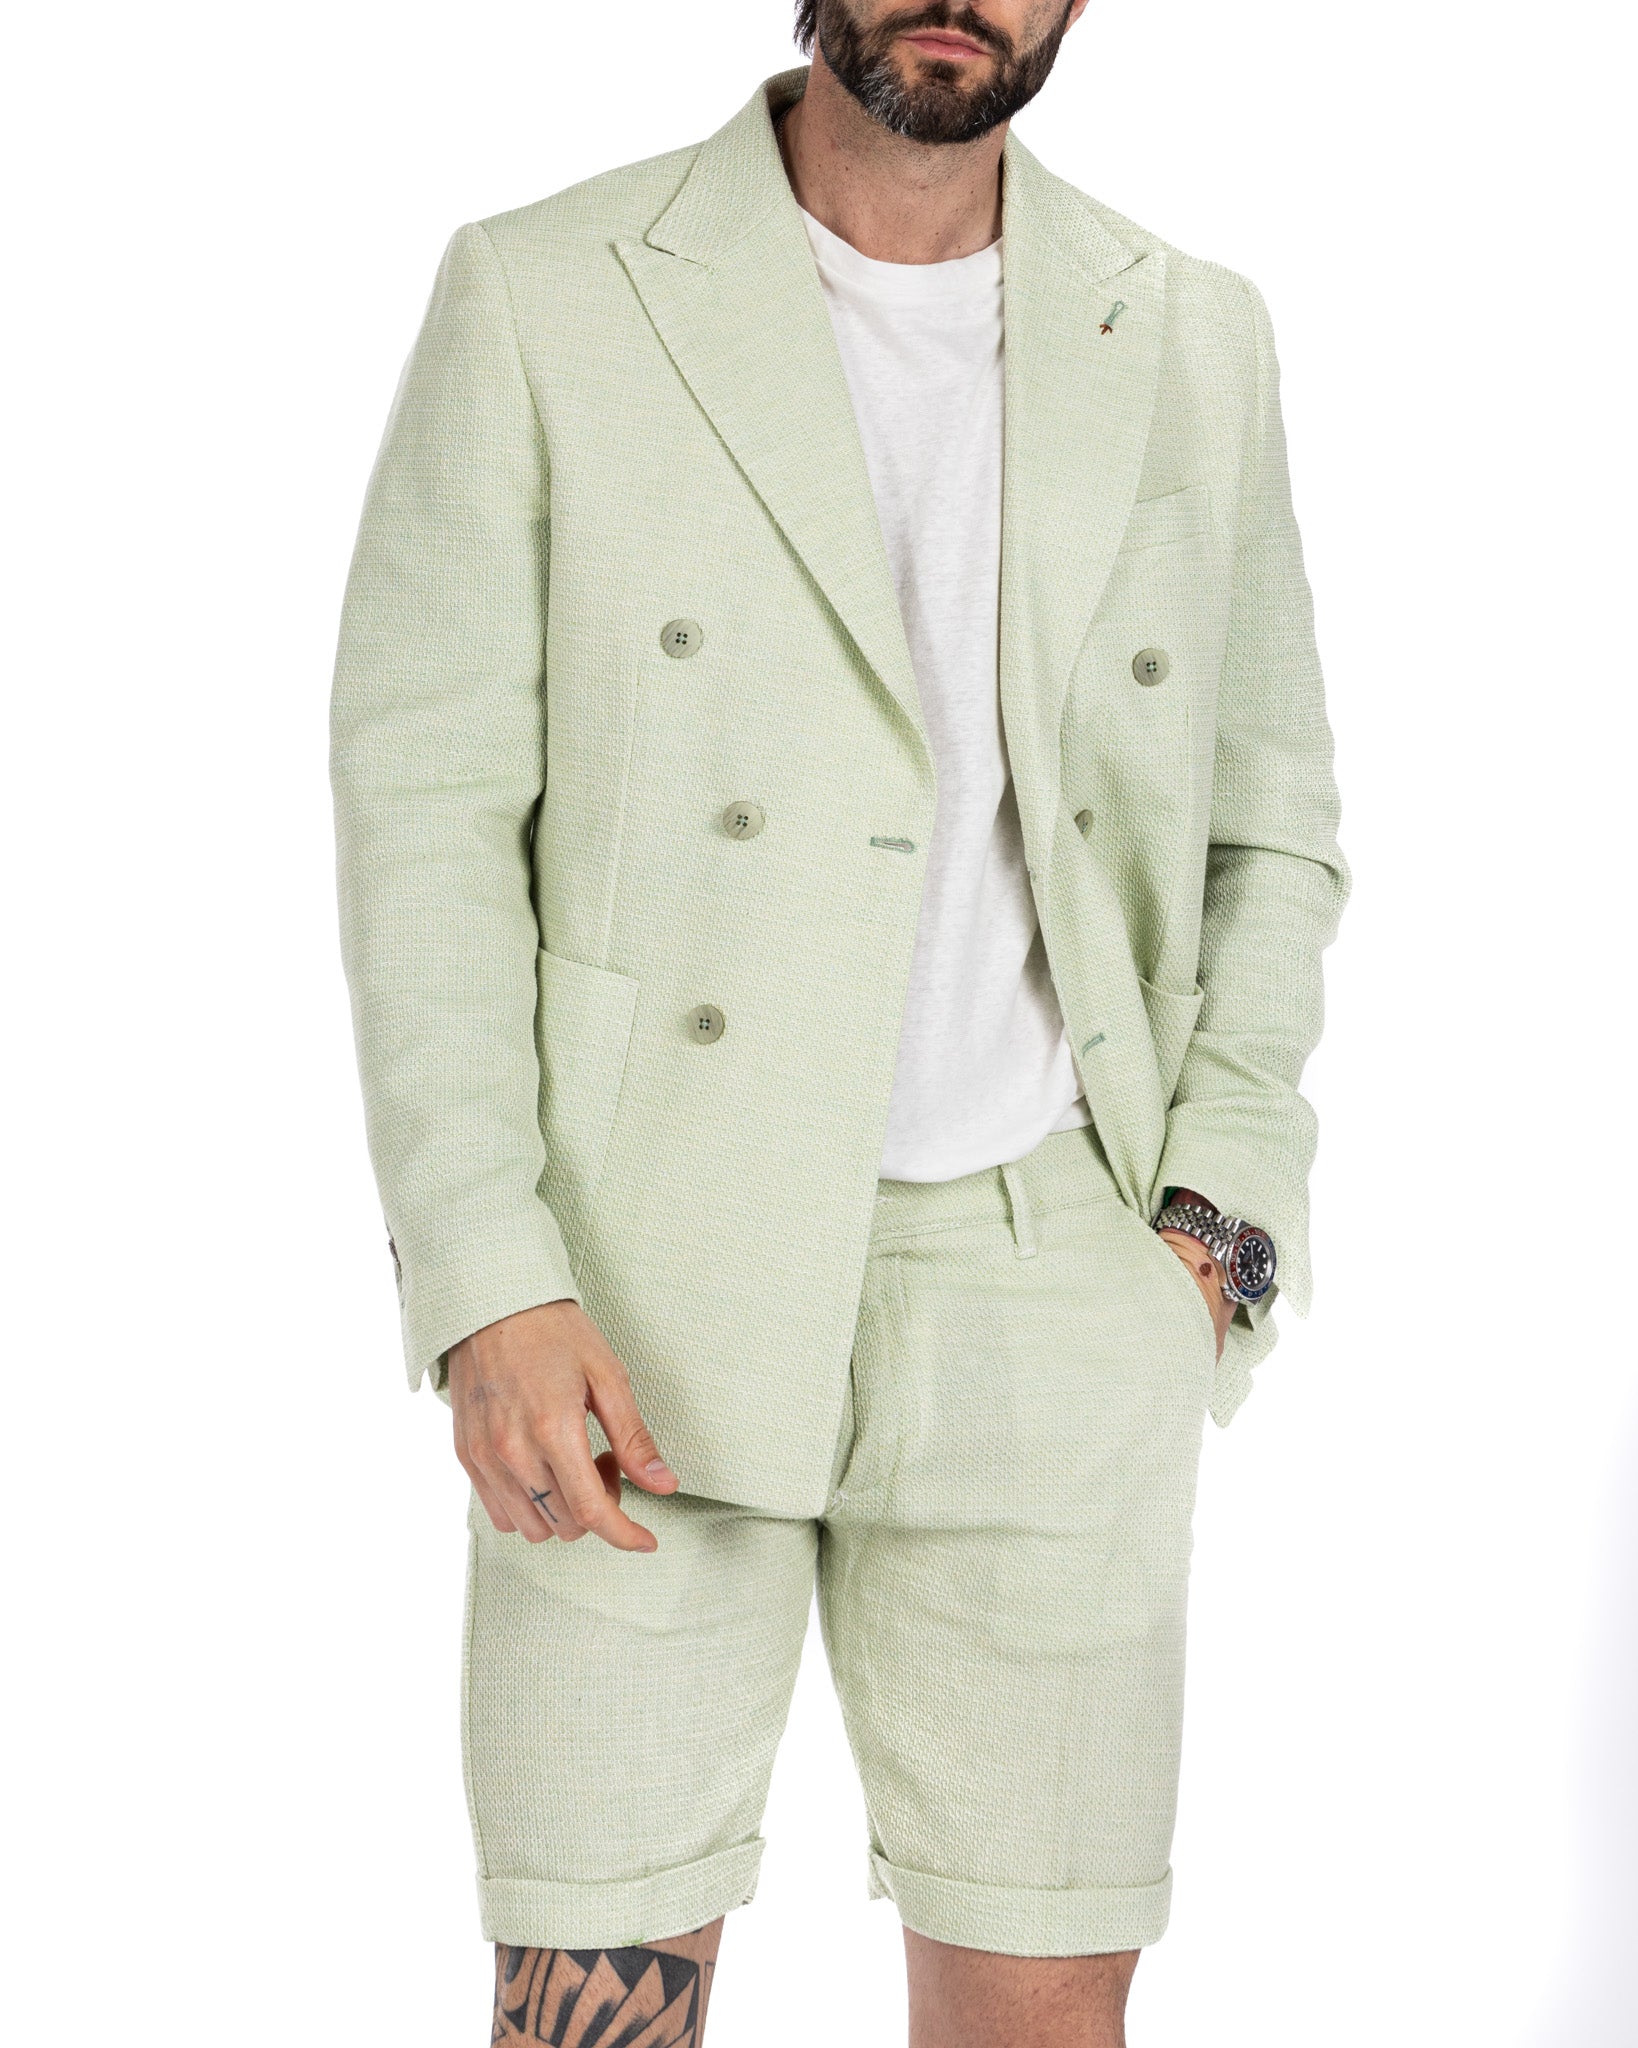 Leuca - giacca doppiopetto verde